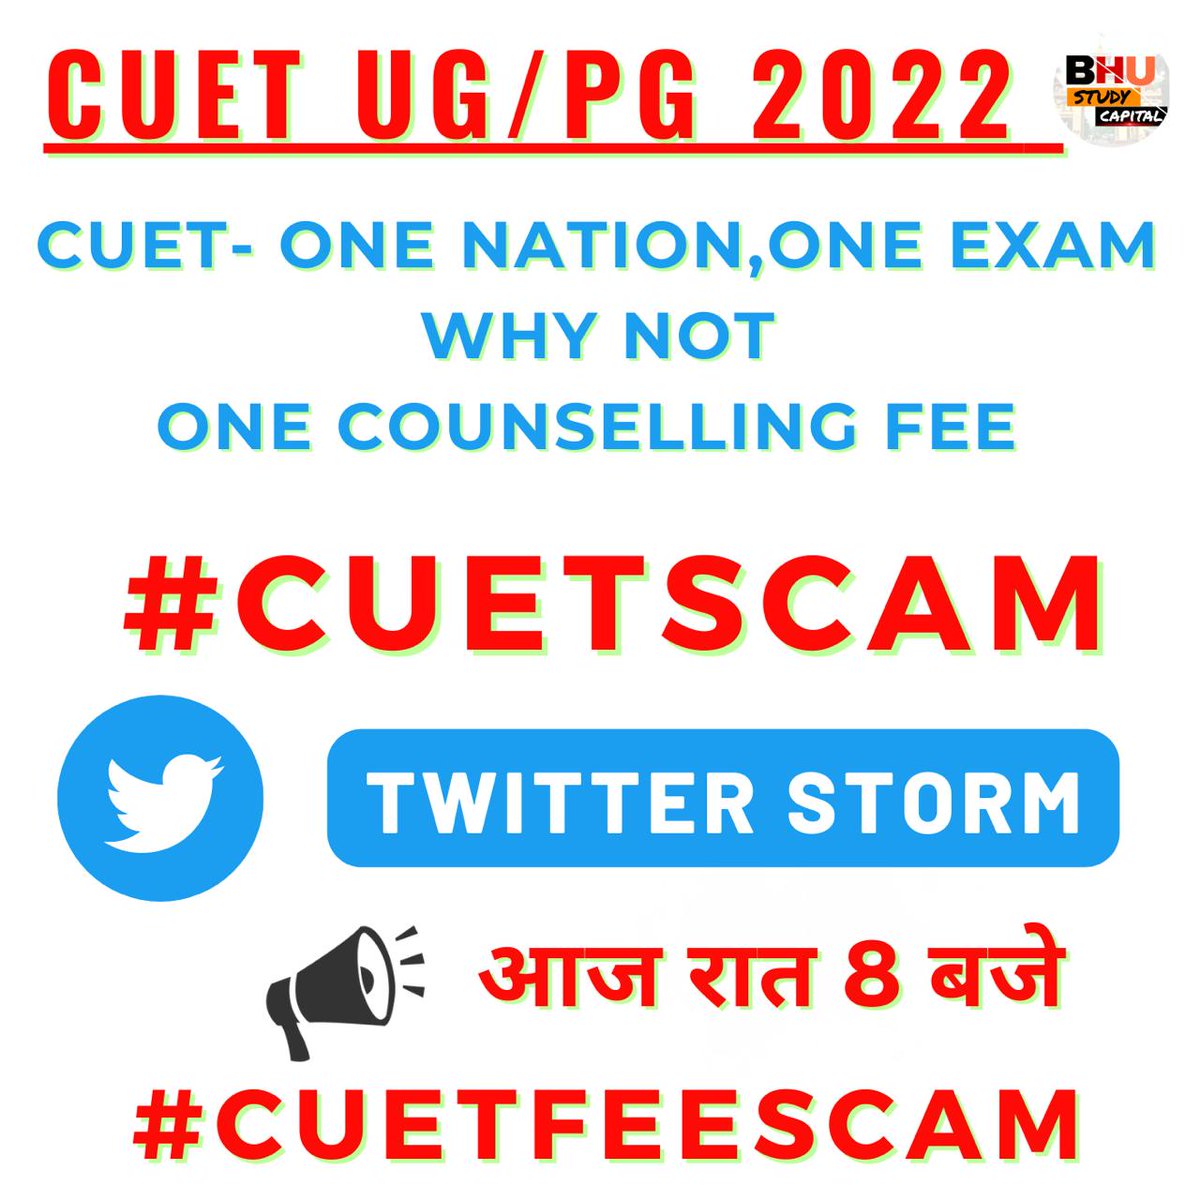 Stop CUET SCAM #CUETFEESCAM  #CUETSCAM @DG_NTA @mamidala90 
@AmartyaUpadhya9 @EduMinOfIndia